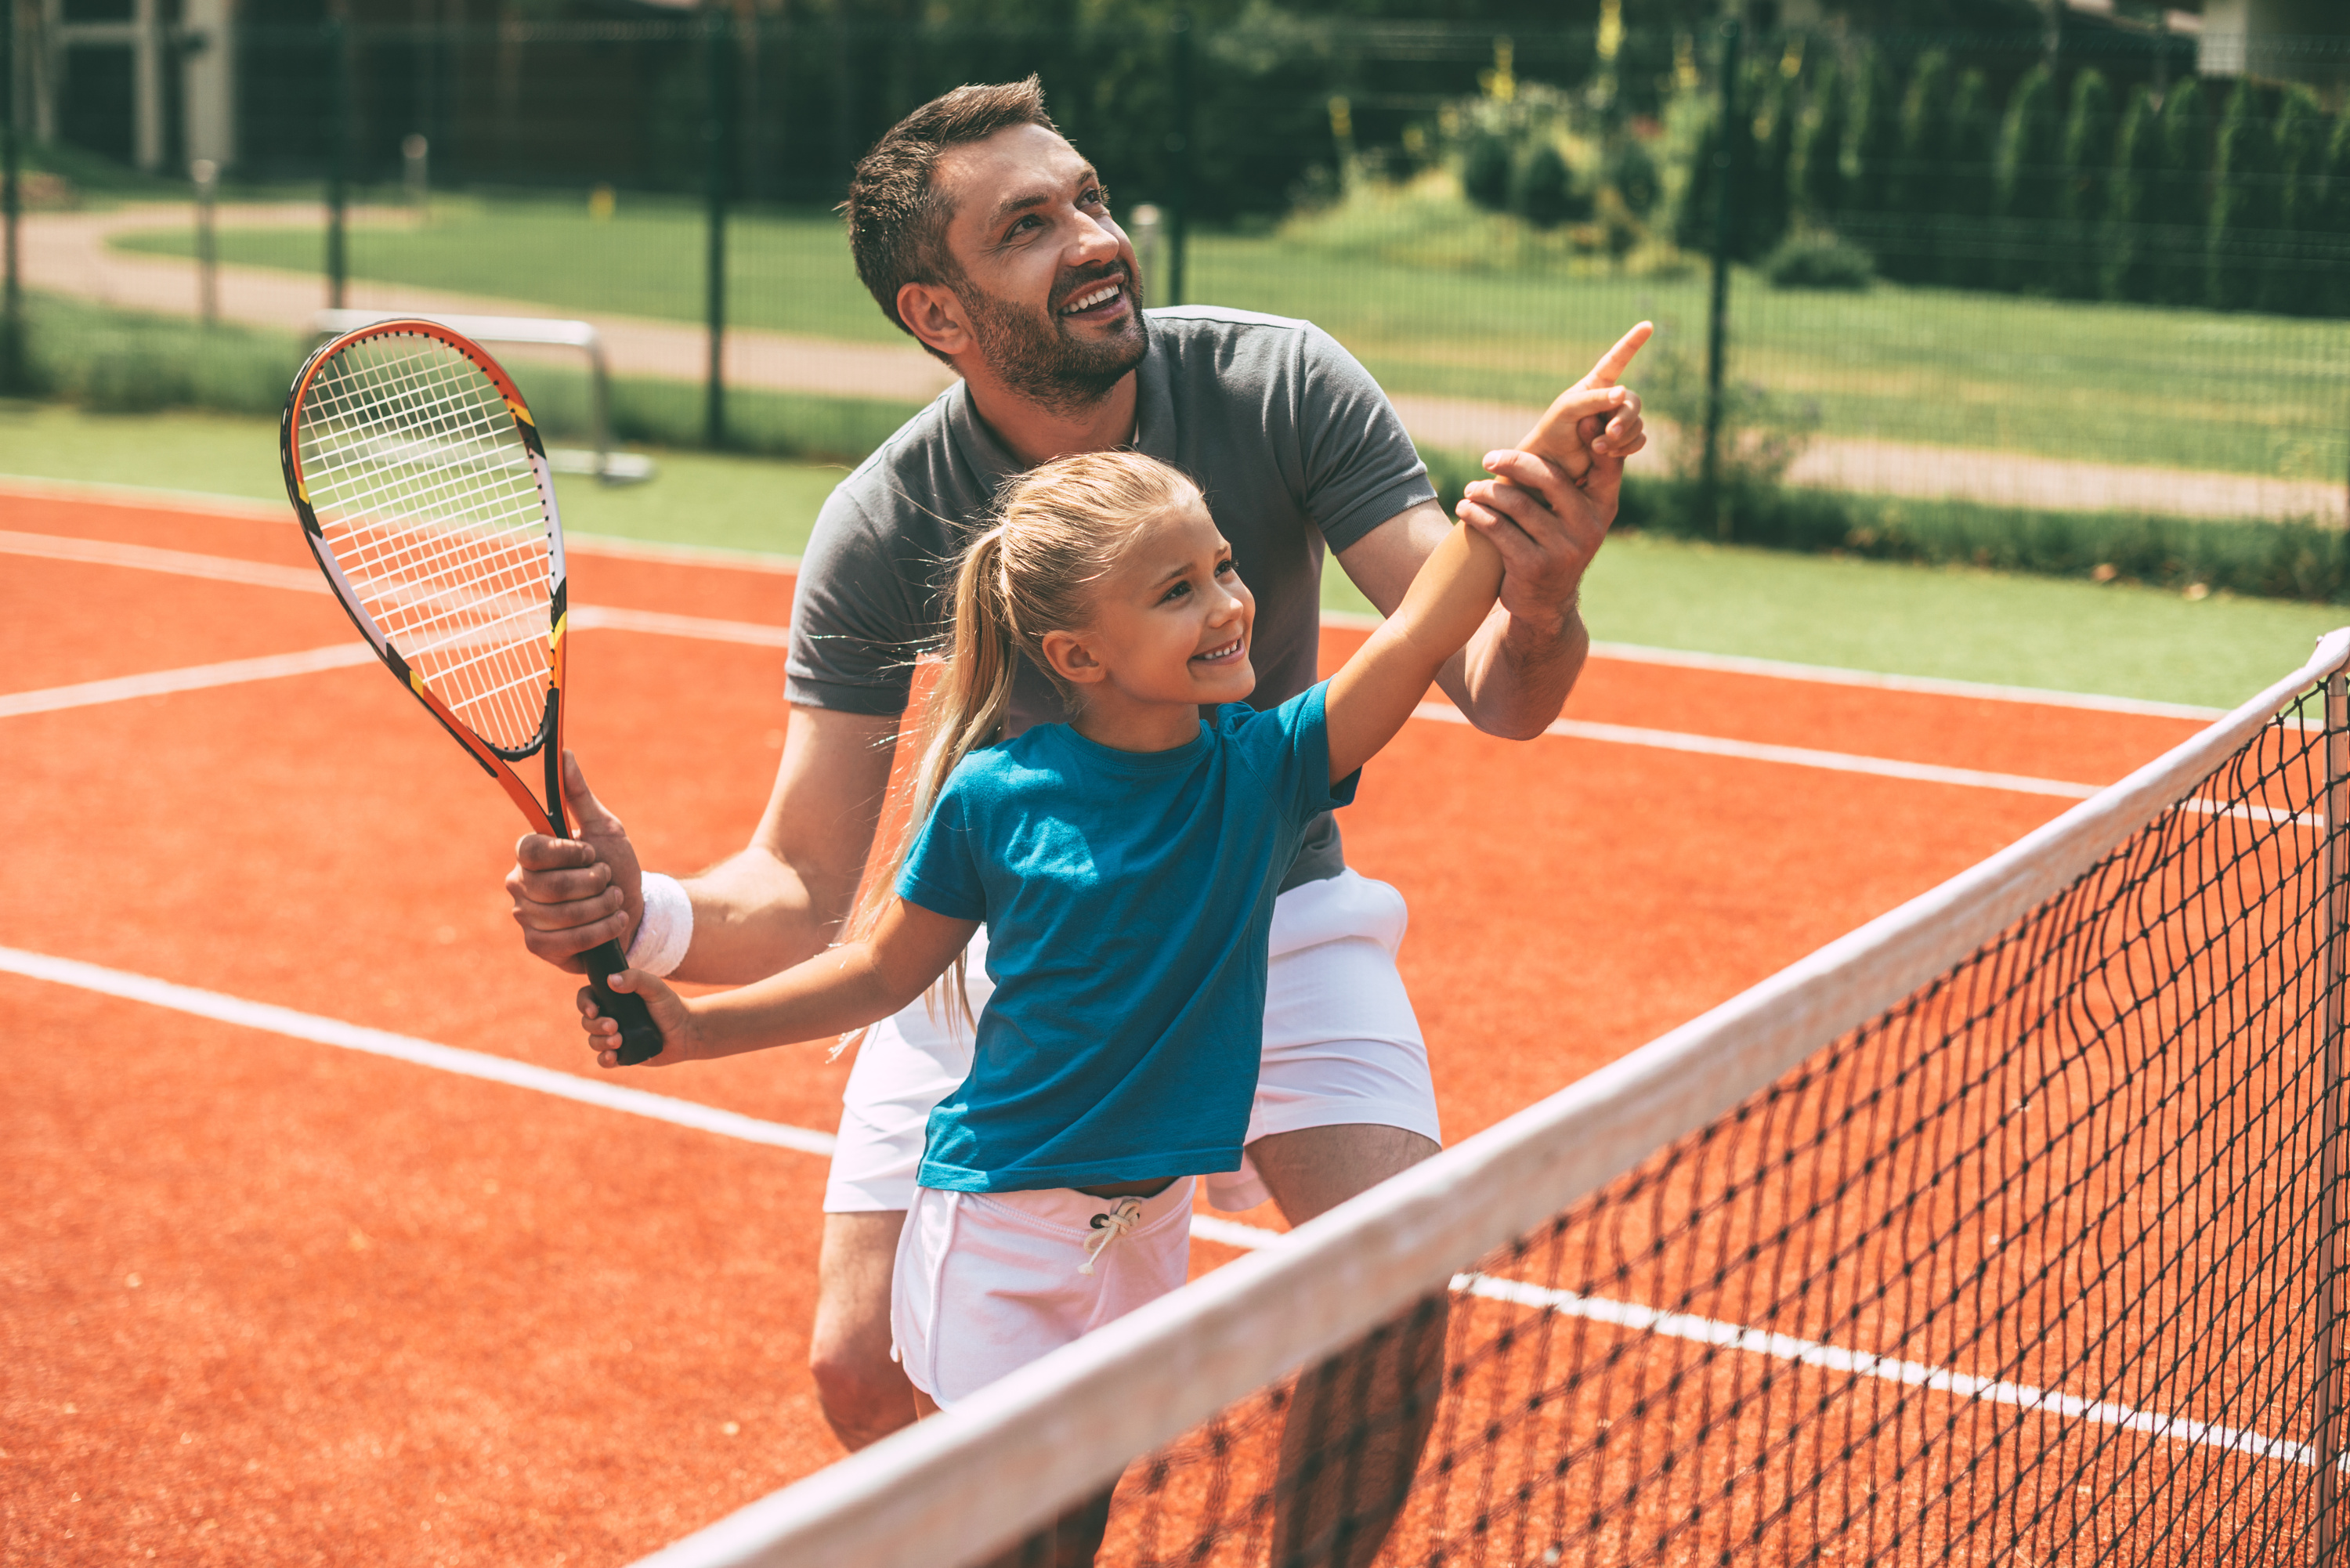 Teaching kids tennis